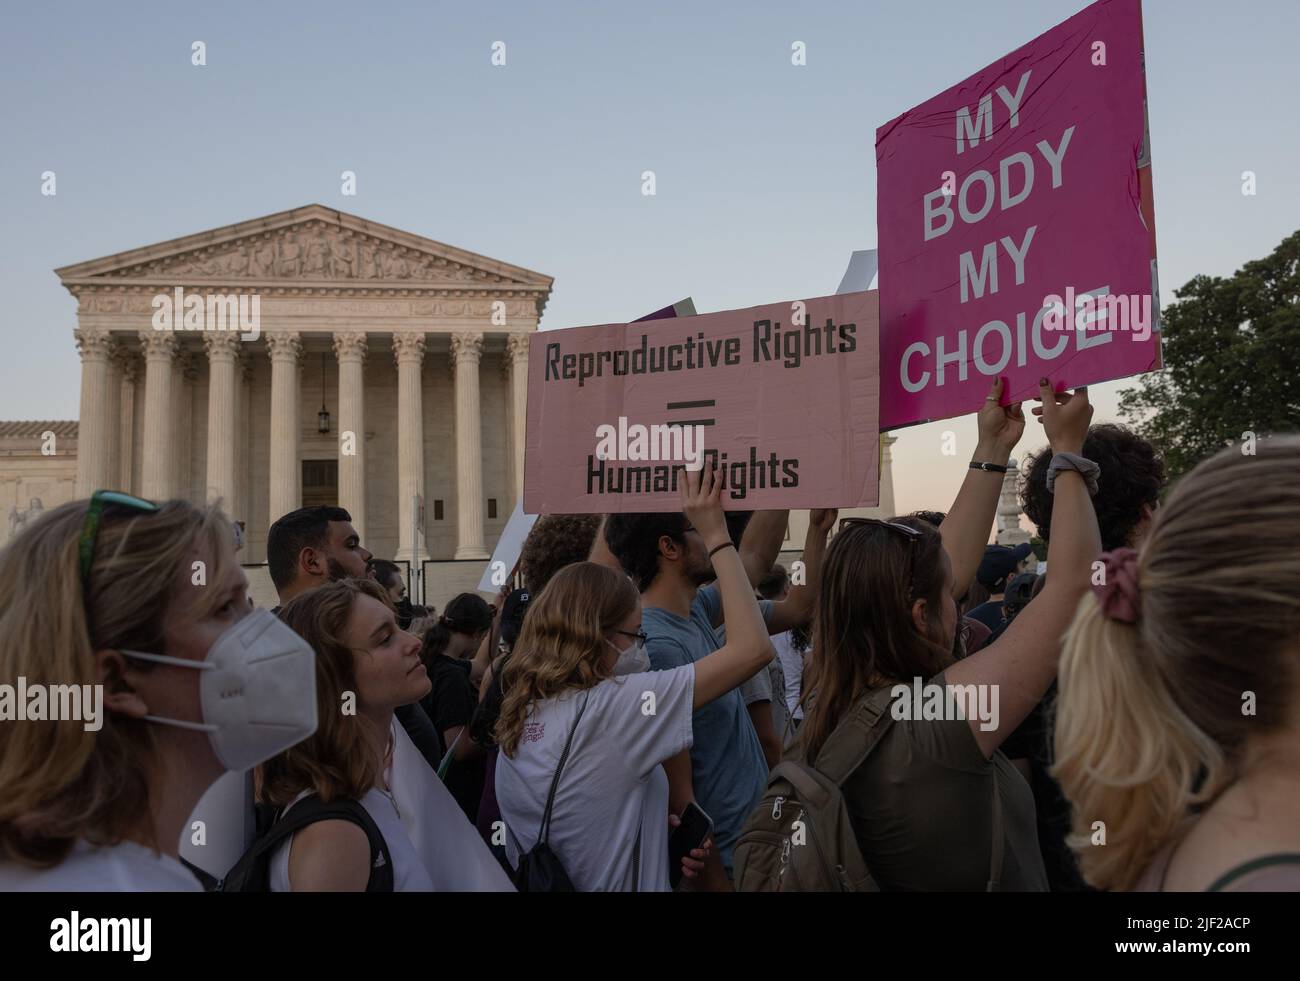 WASHINGTON, D.C. – 24 juin 2022: Les manifestants pour les droits à l'avortement se rassemblent près de la Cour suprême des États-Unis. Banque D'Images